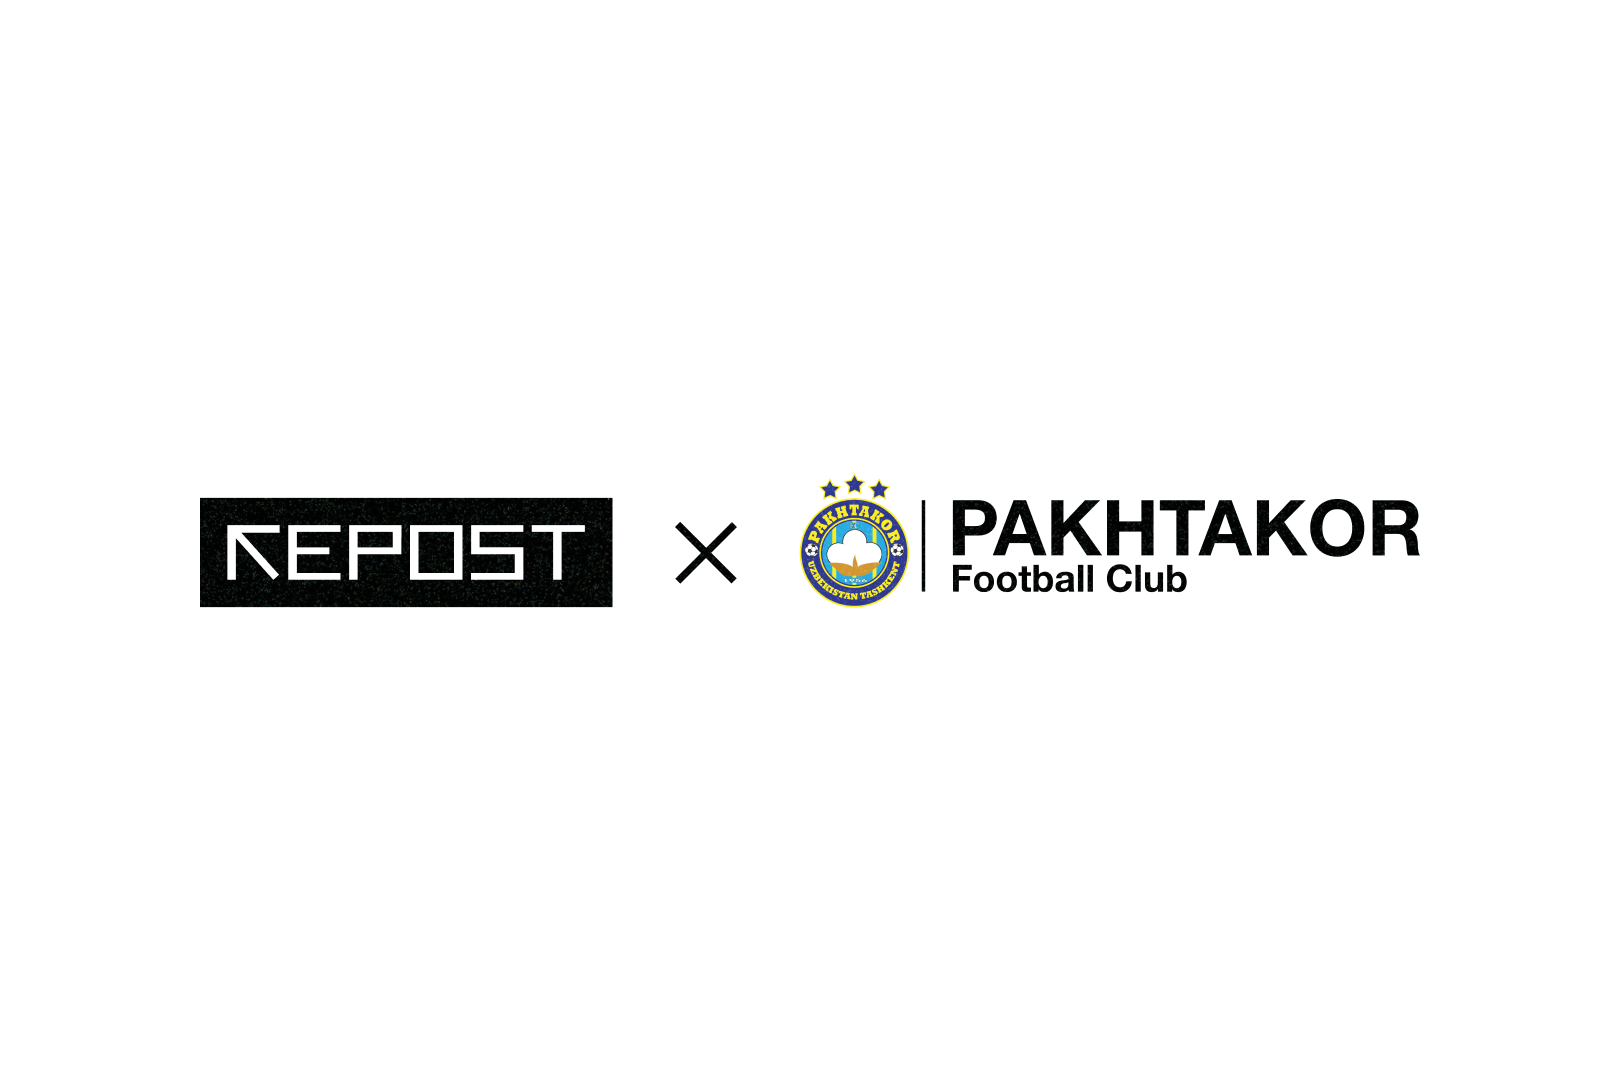 Repost.uz официально стал информационным партнером футбольного клуба «Пахтакор»